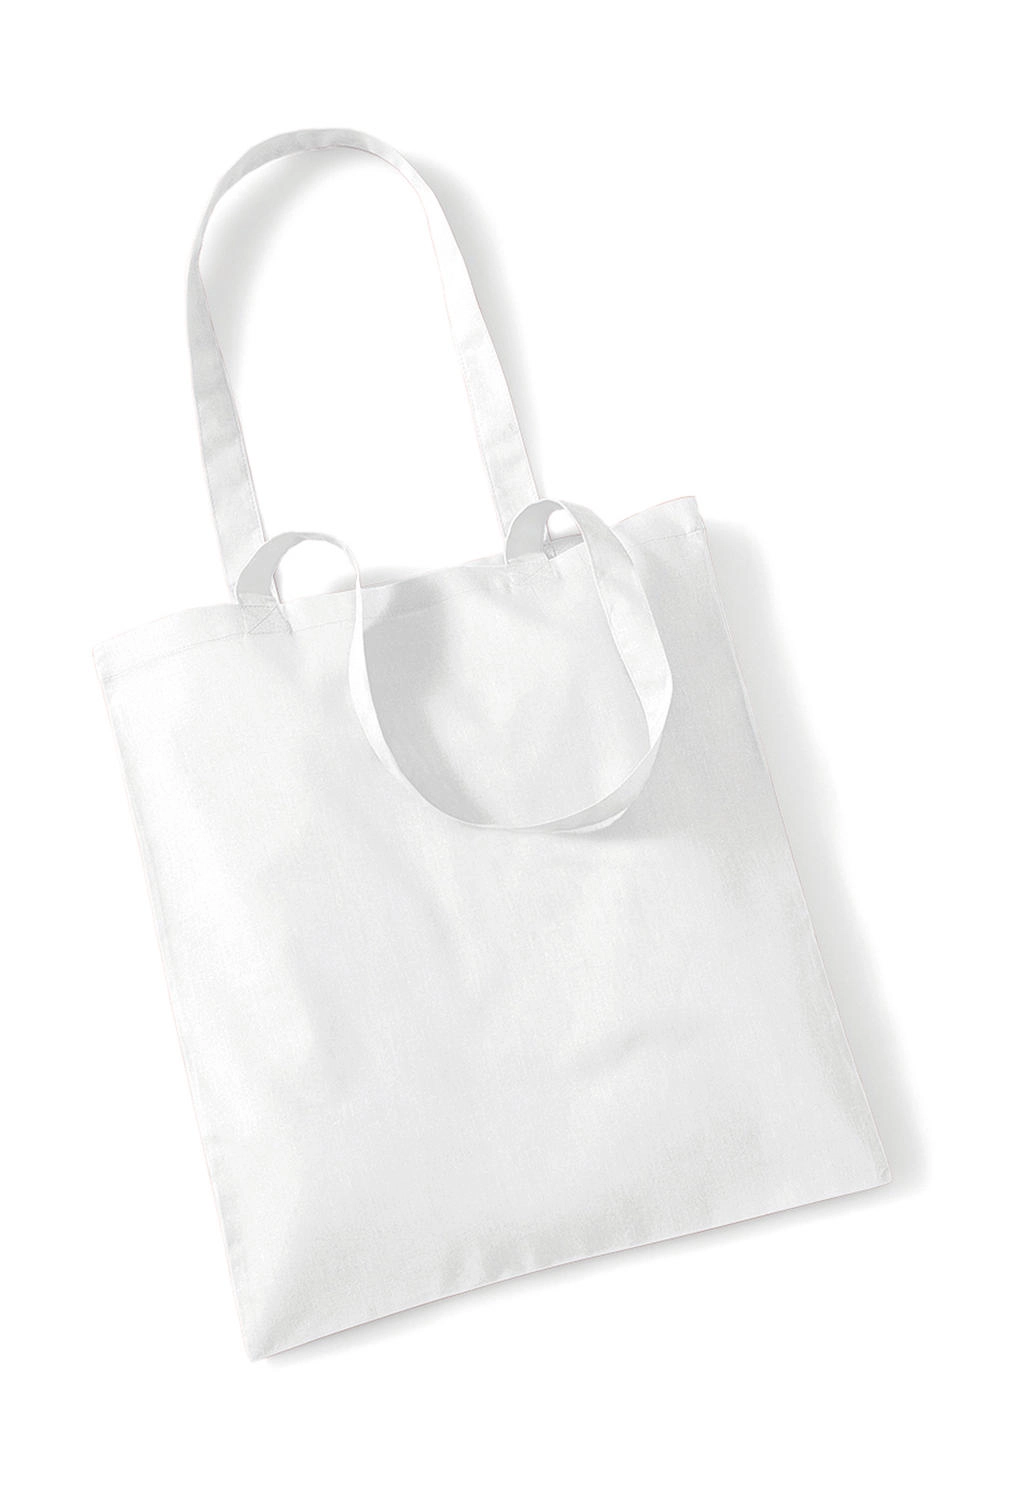 Bag for Life - Long Handles zum Besticken und Bedrucken in der Farbe White mit Ihren Logo, Schriftzug oder Motiv.